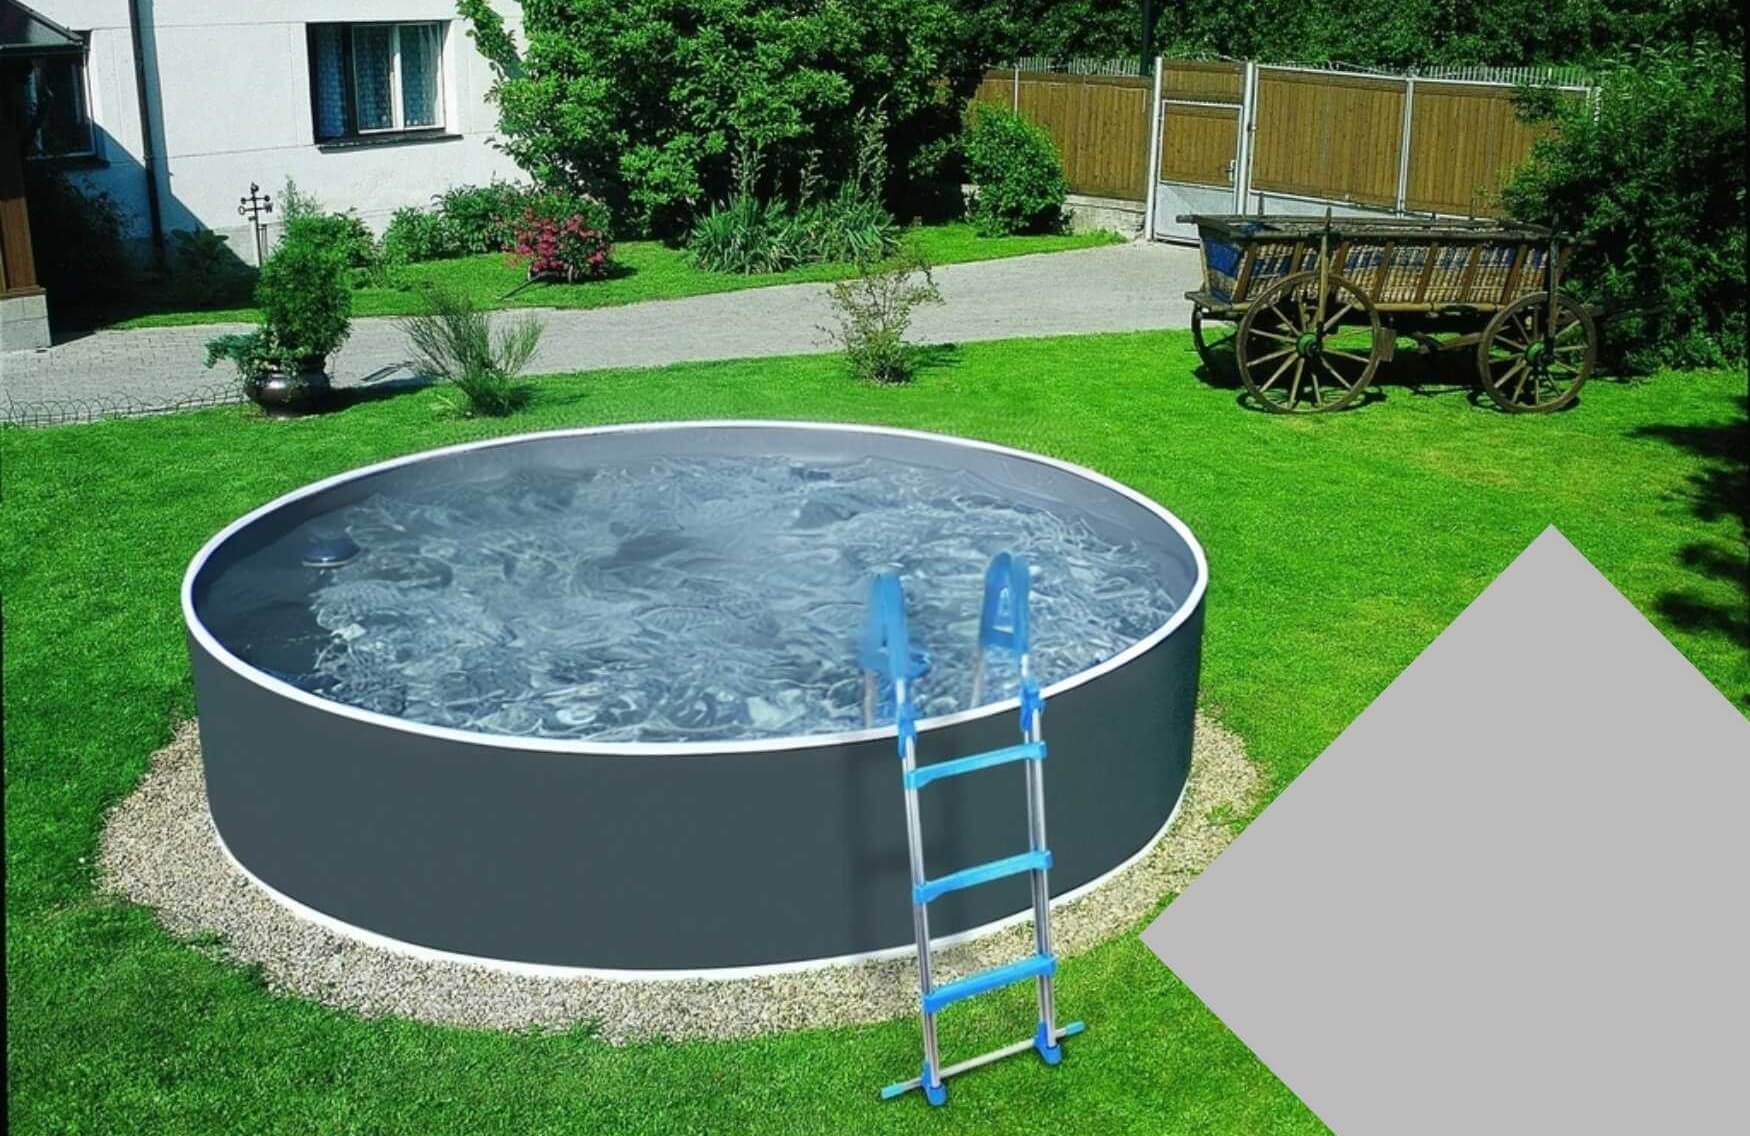 Planet Pool Náhradní bazénová fólie Grey pro bazén průměr 3,6 m x 1,1 m - šedá barva